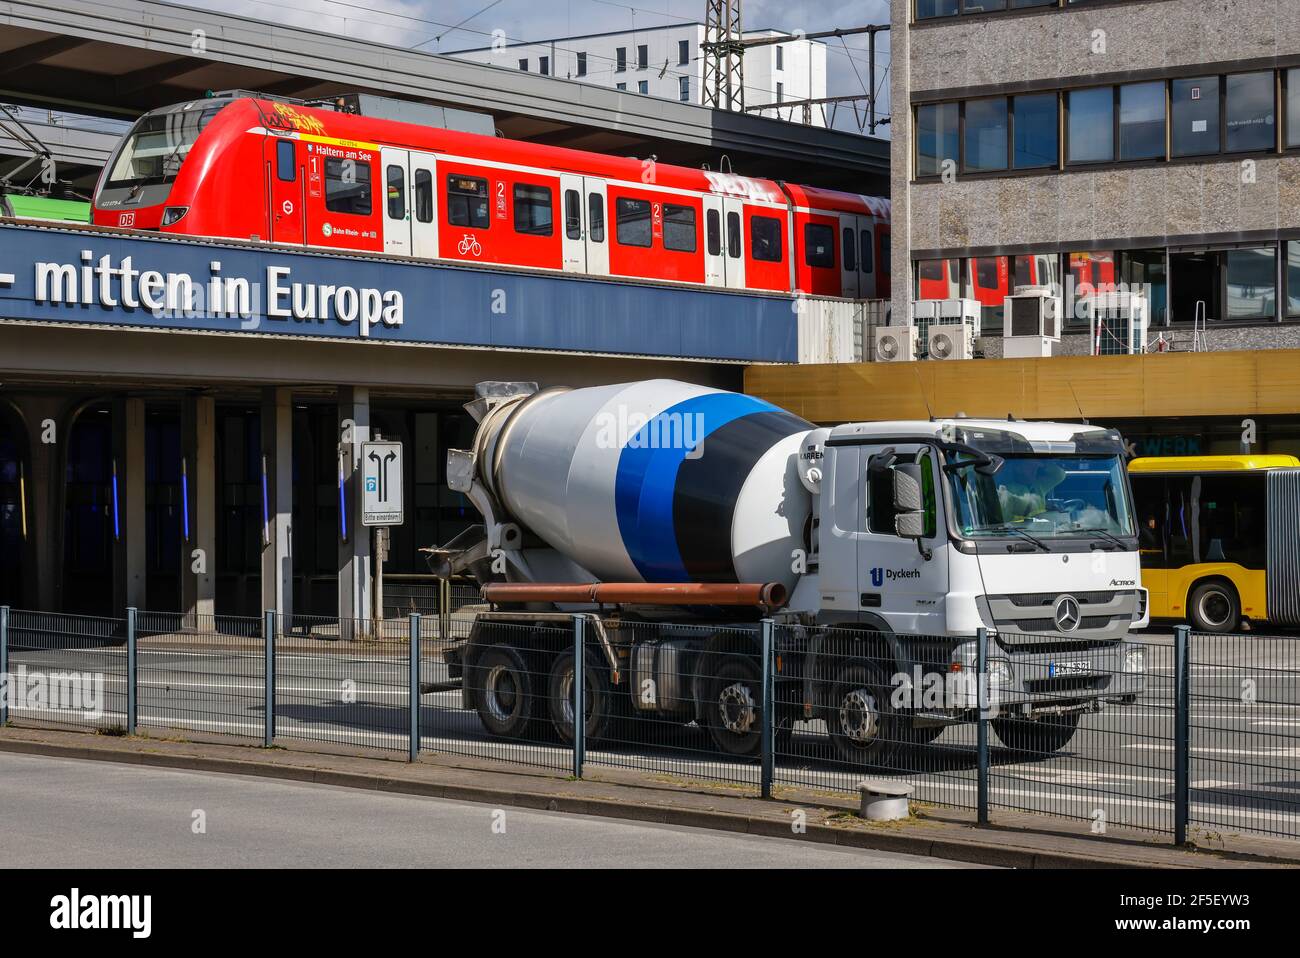 Essen, Renania Settentrionale-Vestfalia, Germania - vari mezzi di trasporto nel centro della città, autobus, treni e un betoniera alla stazione centrale di Essen. Foto Stock